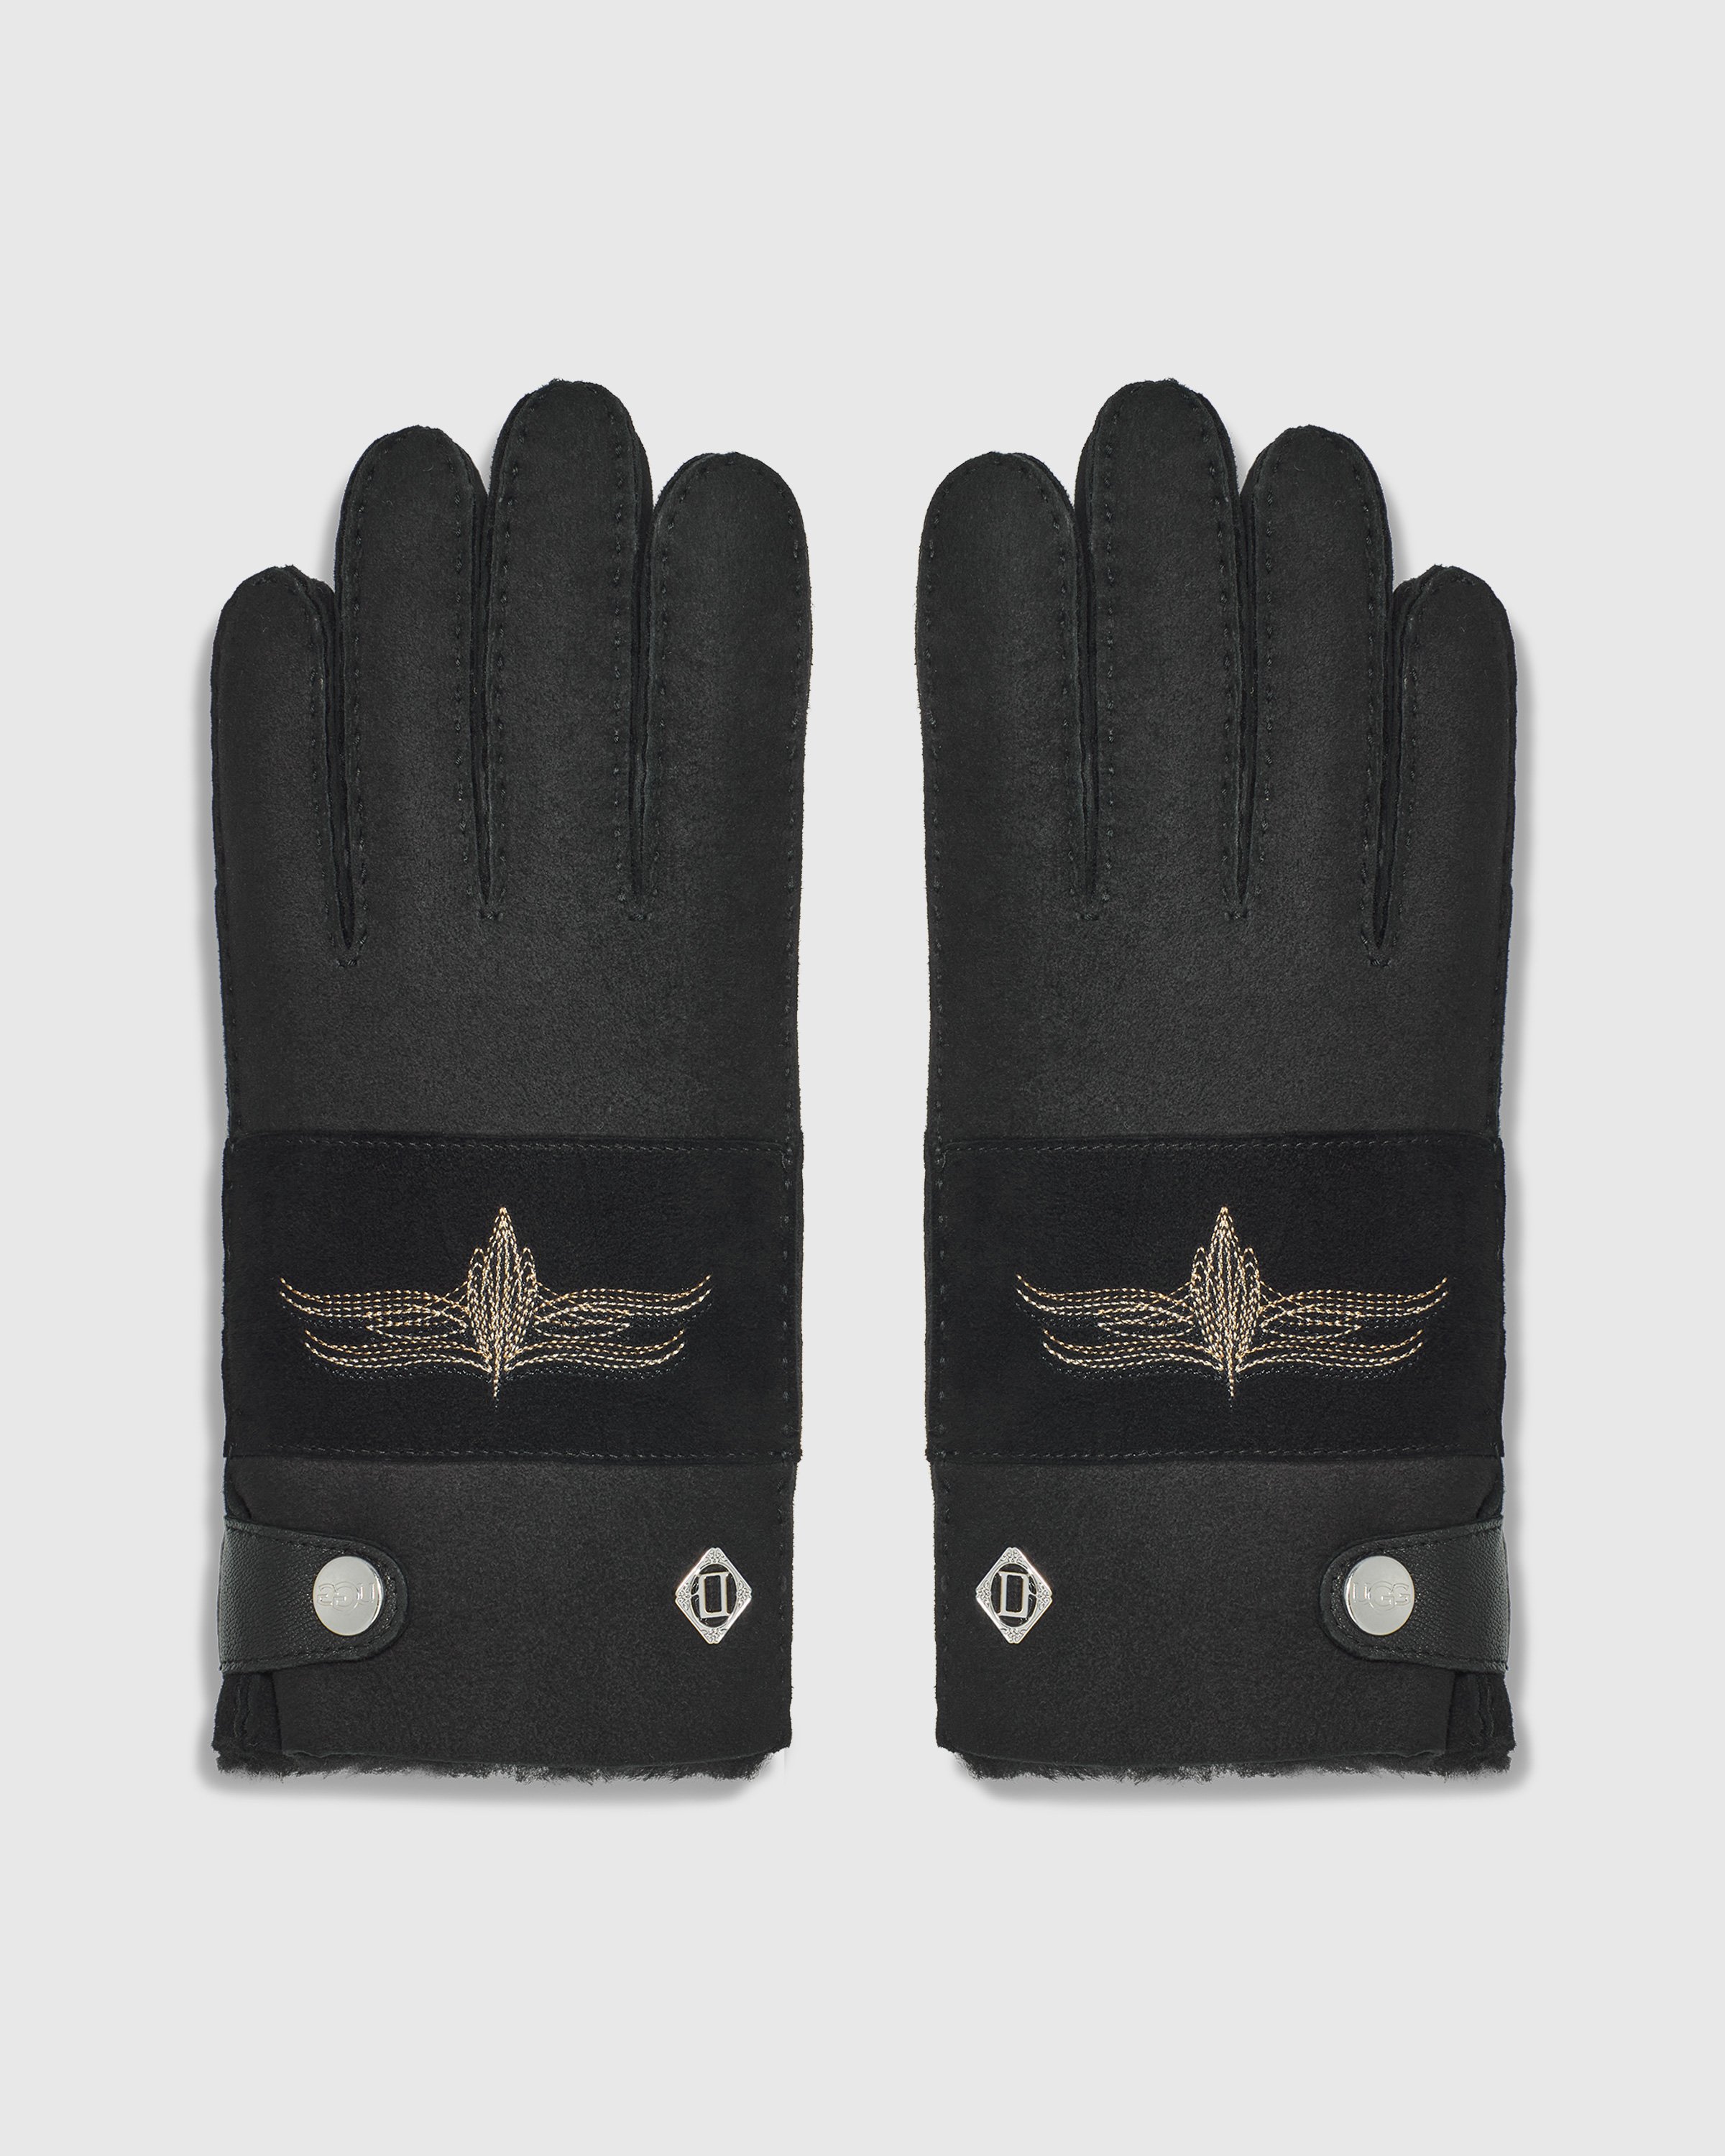 Ugg x Children of the Discordance - Sheepskin Gloves Black - Accessories - Black - Image 1